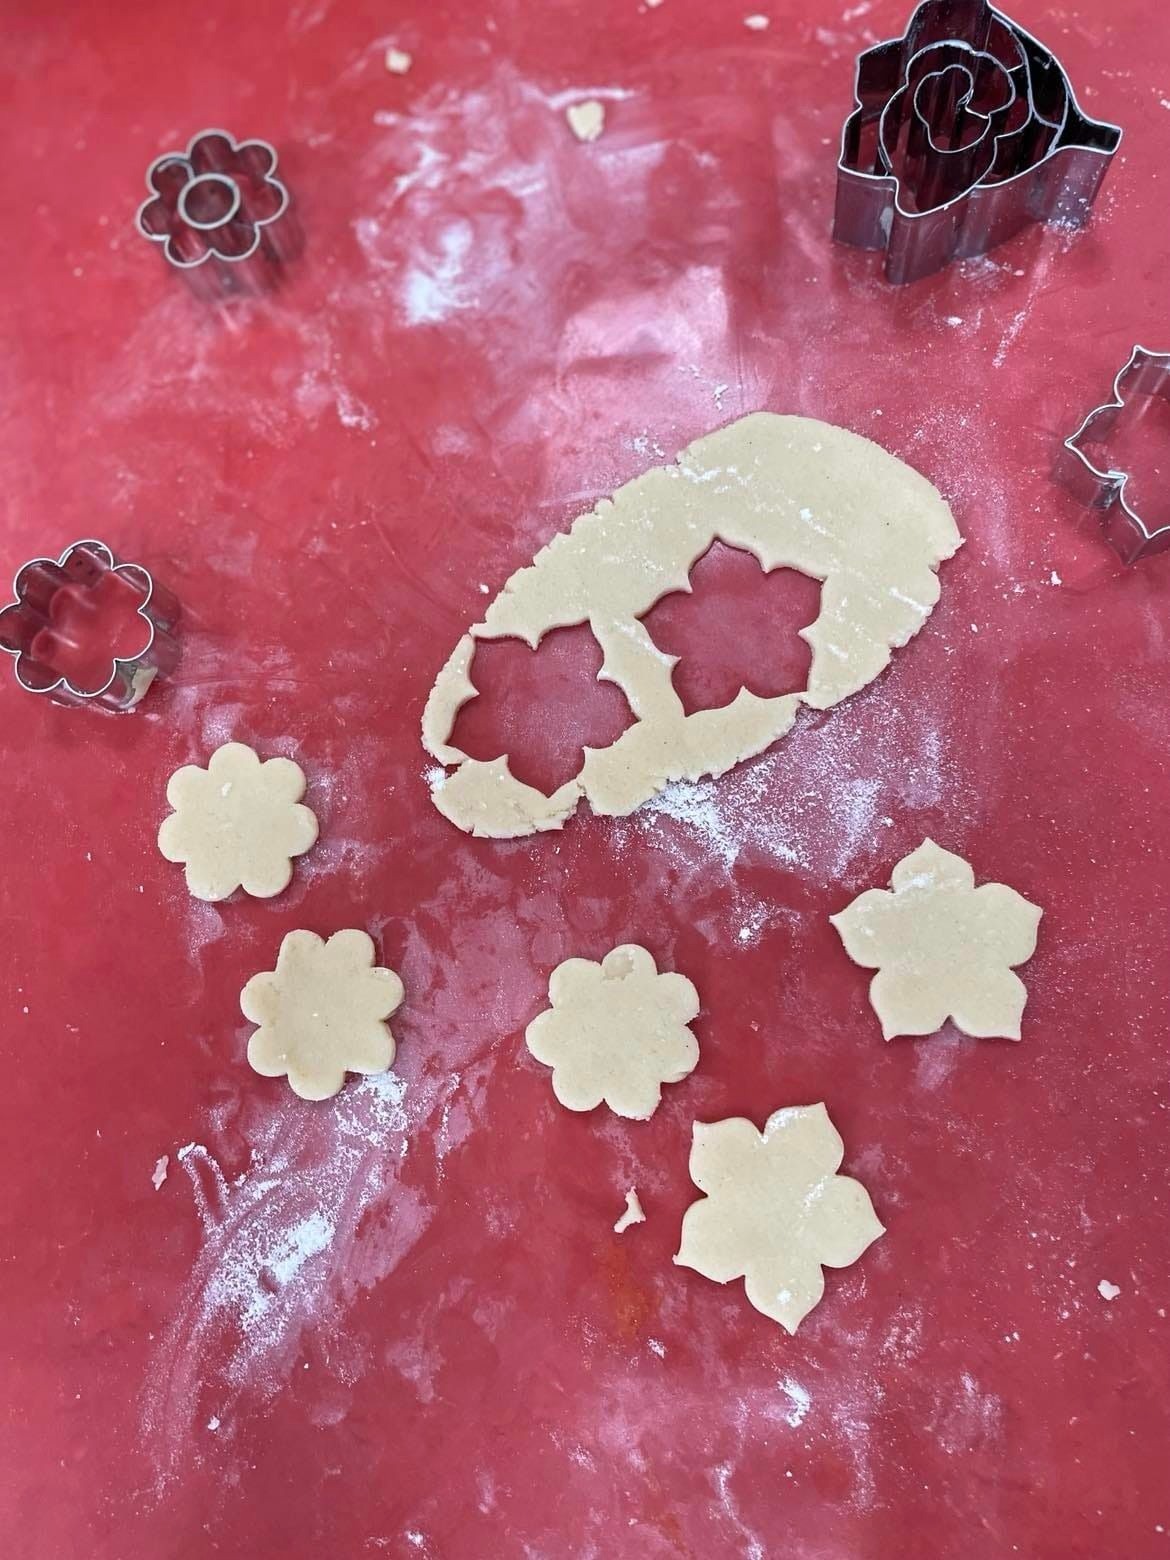 Na zdjęciu widzimy czerwony blat kuchenny, na którym znajdują się różne metalowe foremki do ciastek w kształtach kwiatów oraz jedna w kształcie róży.